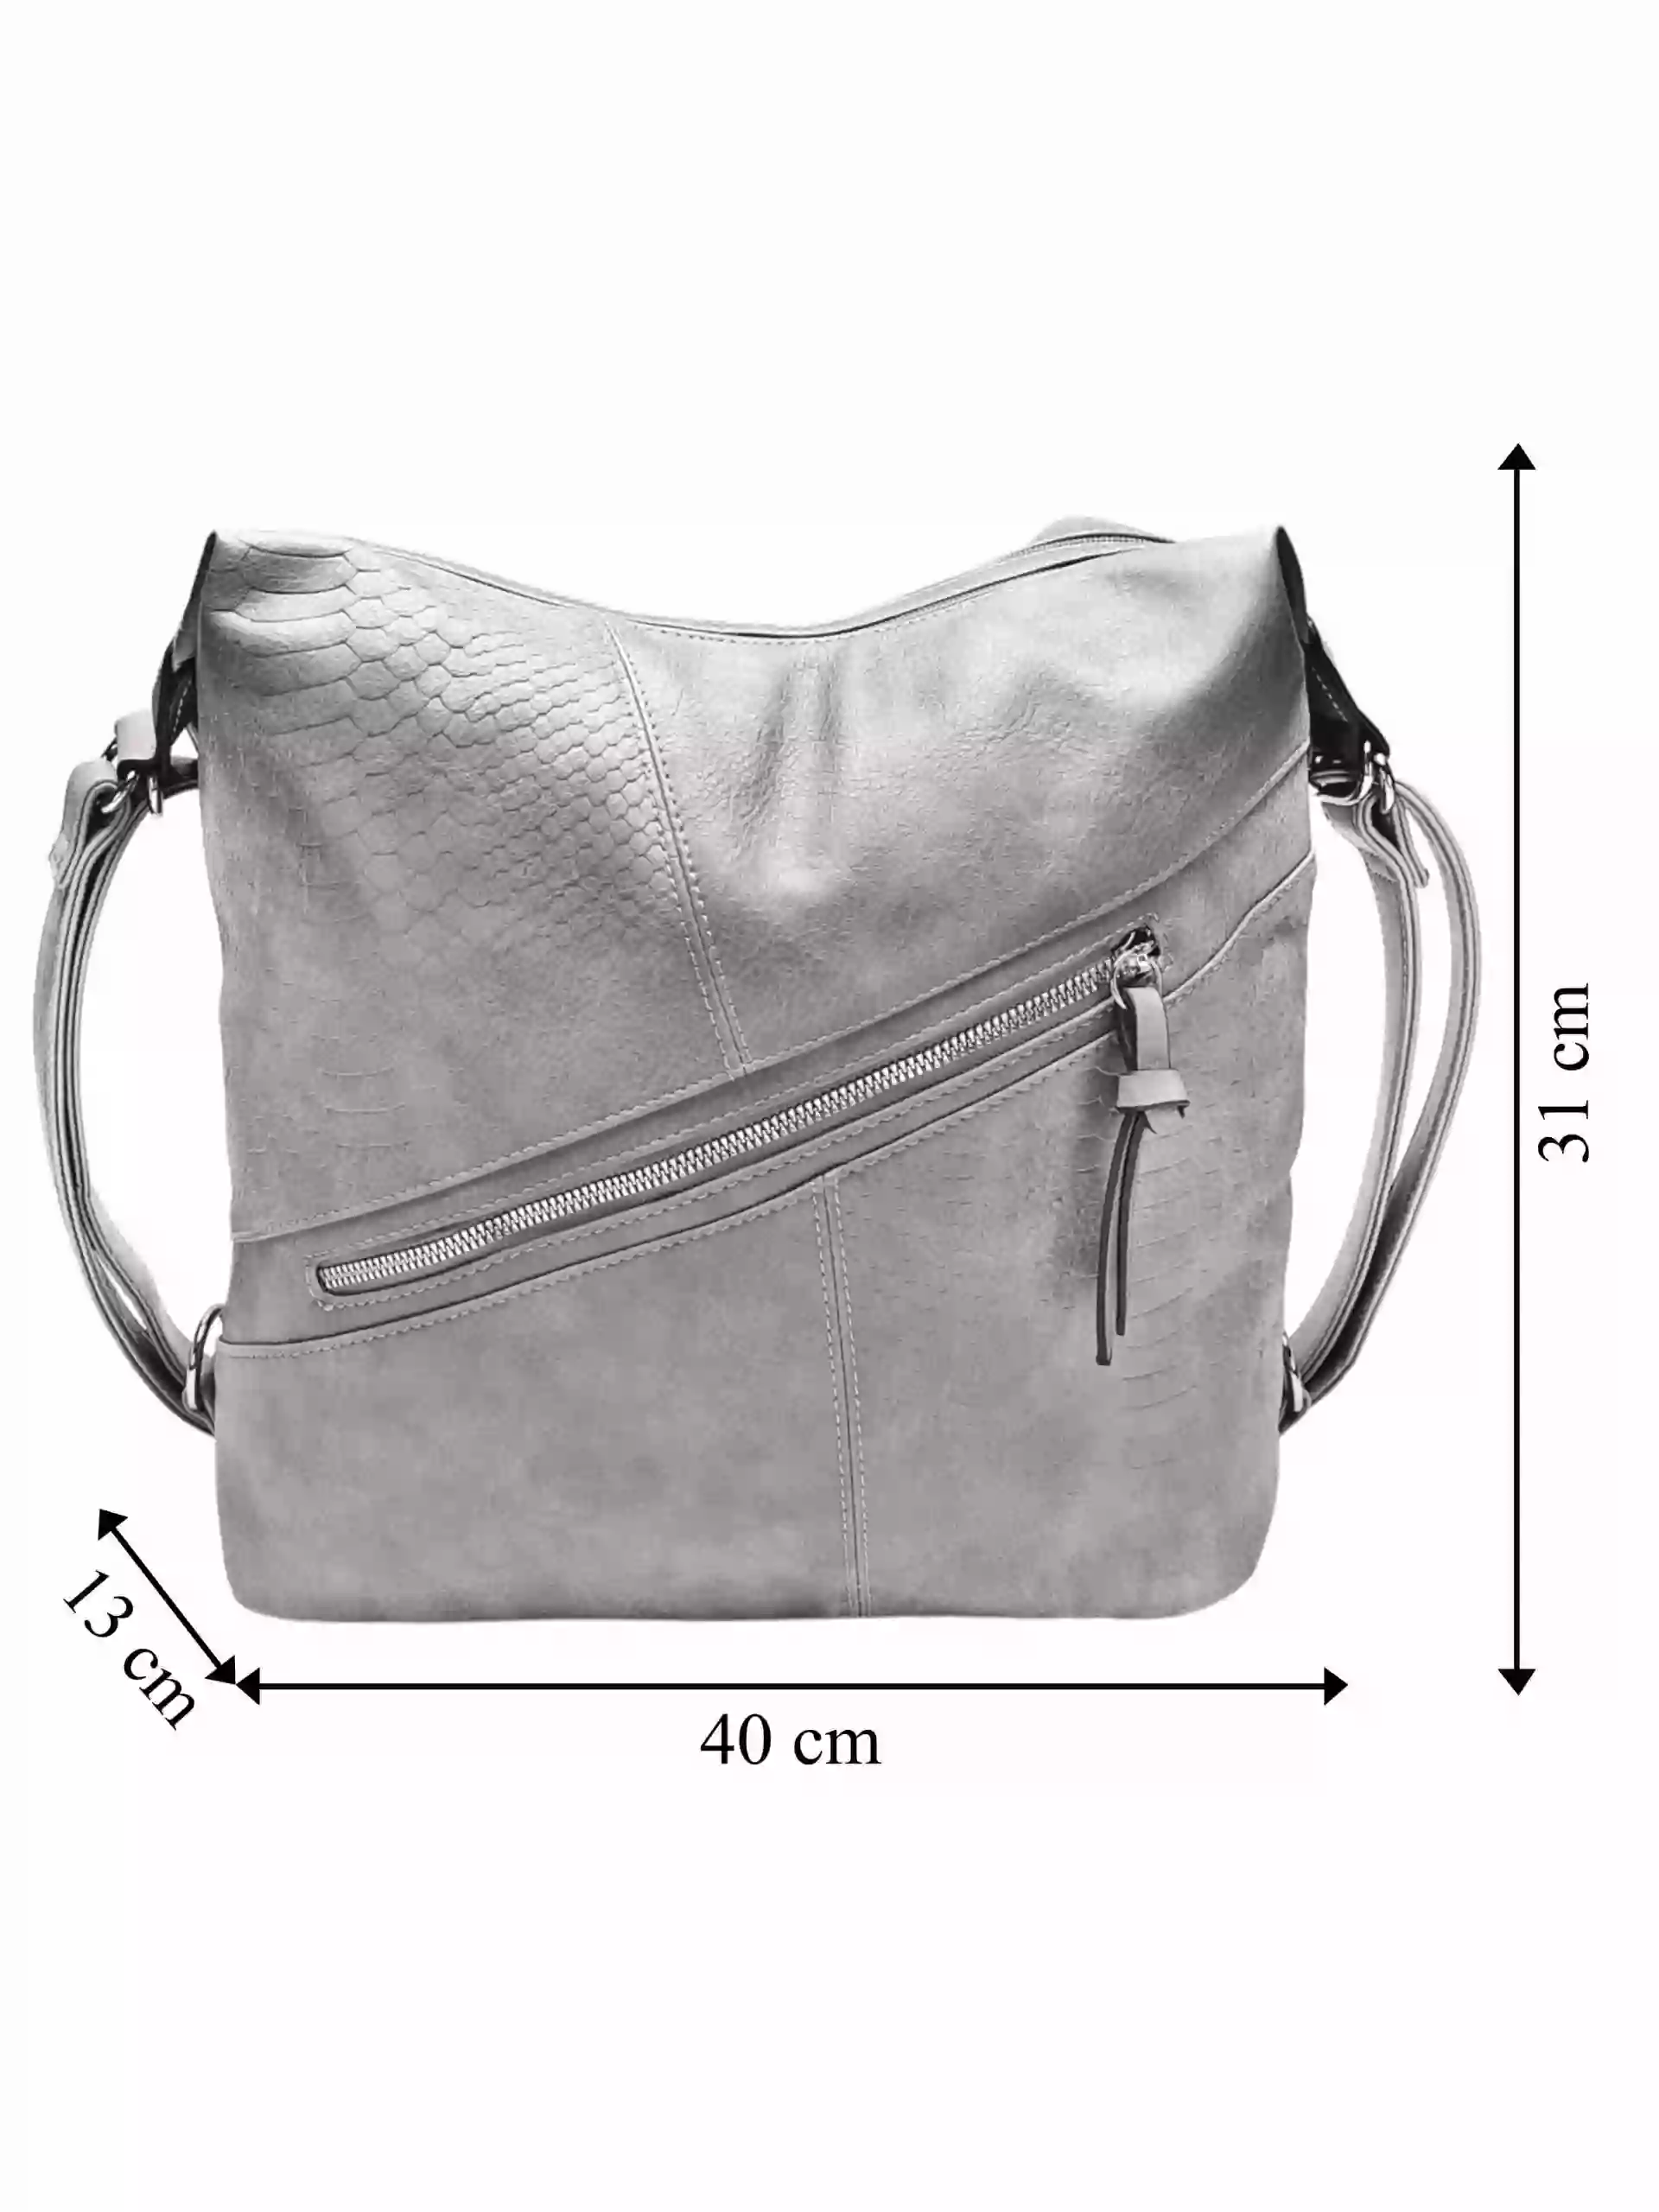 Velký světle šedý kabelko-batoh z eko kůže, Tapple, H18077, přední strana kabelko-batohu 2v1 s rozměry